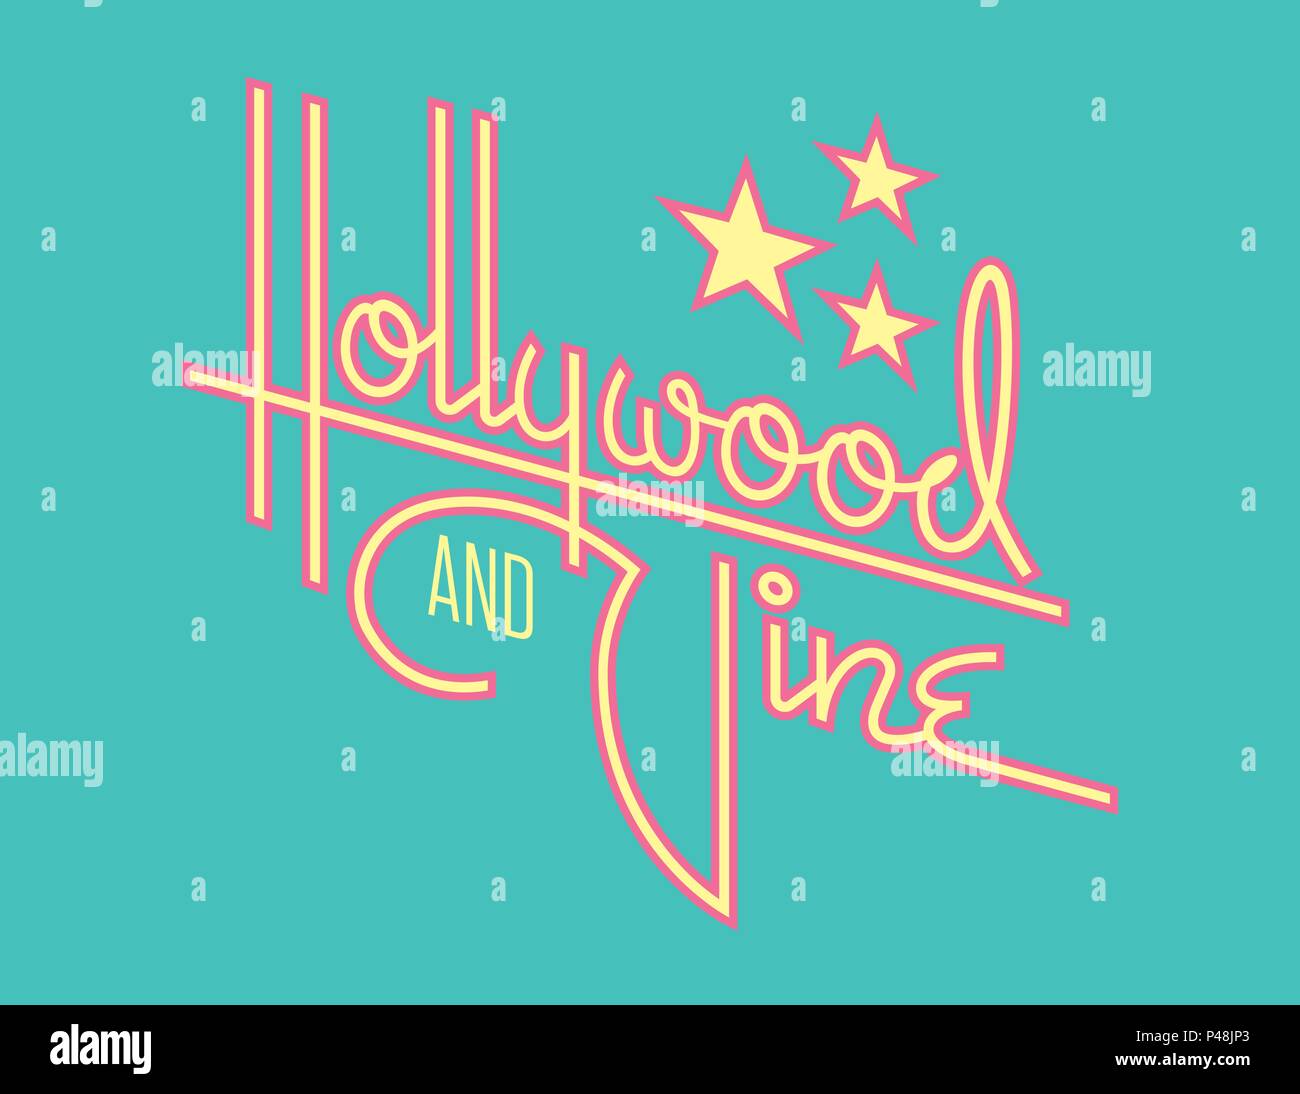 Vecteur conception rétro Hollywood avec des étoiles. La conception du script à la main personnalisé du mot Hollywood avec style rétro années 50 vibe. Illustration de Vecteur